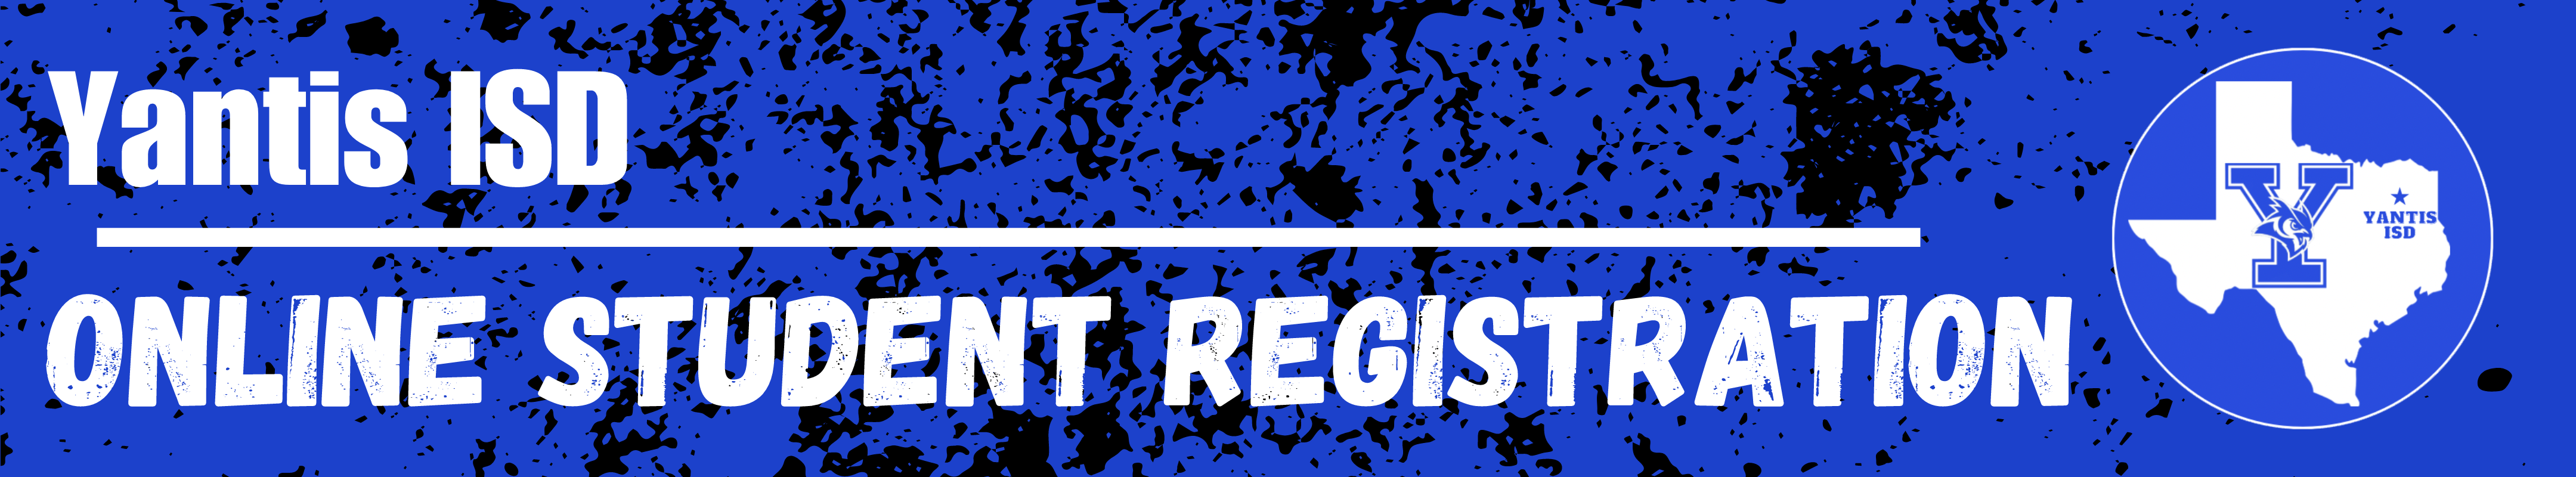 Yantis ISD Online Registration